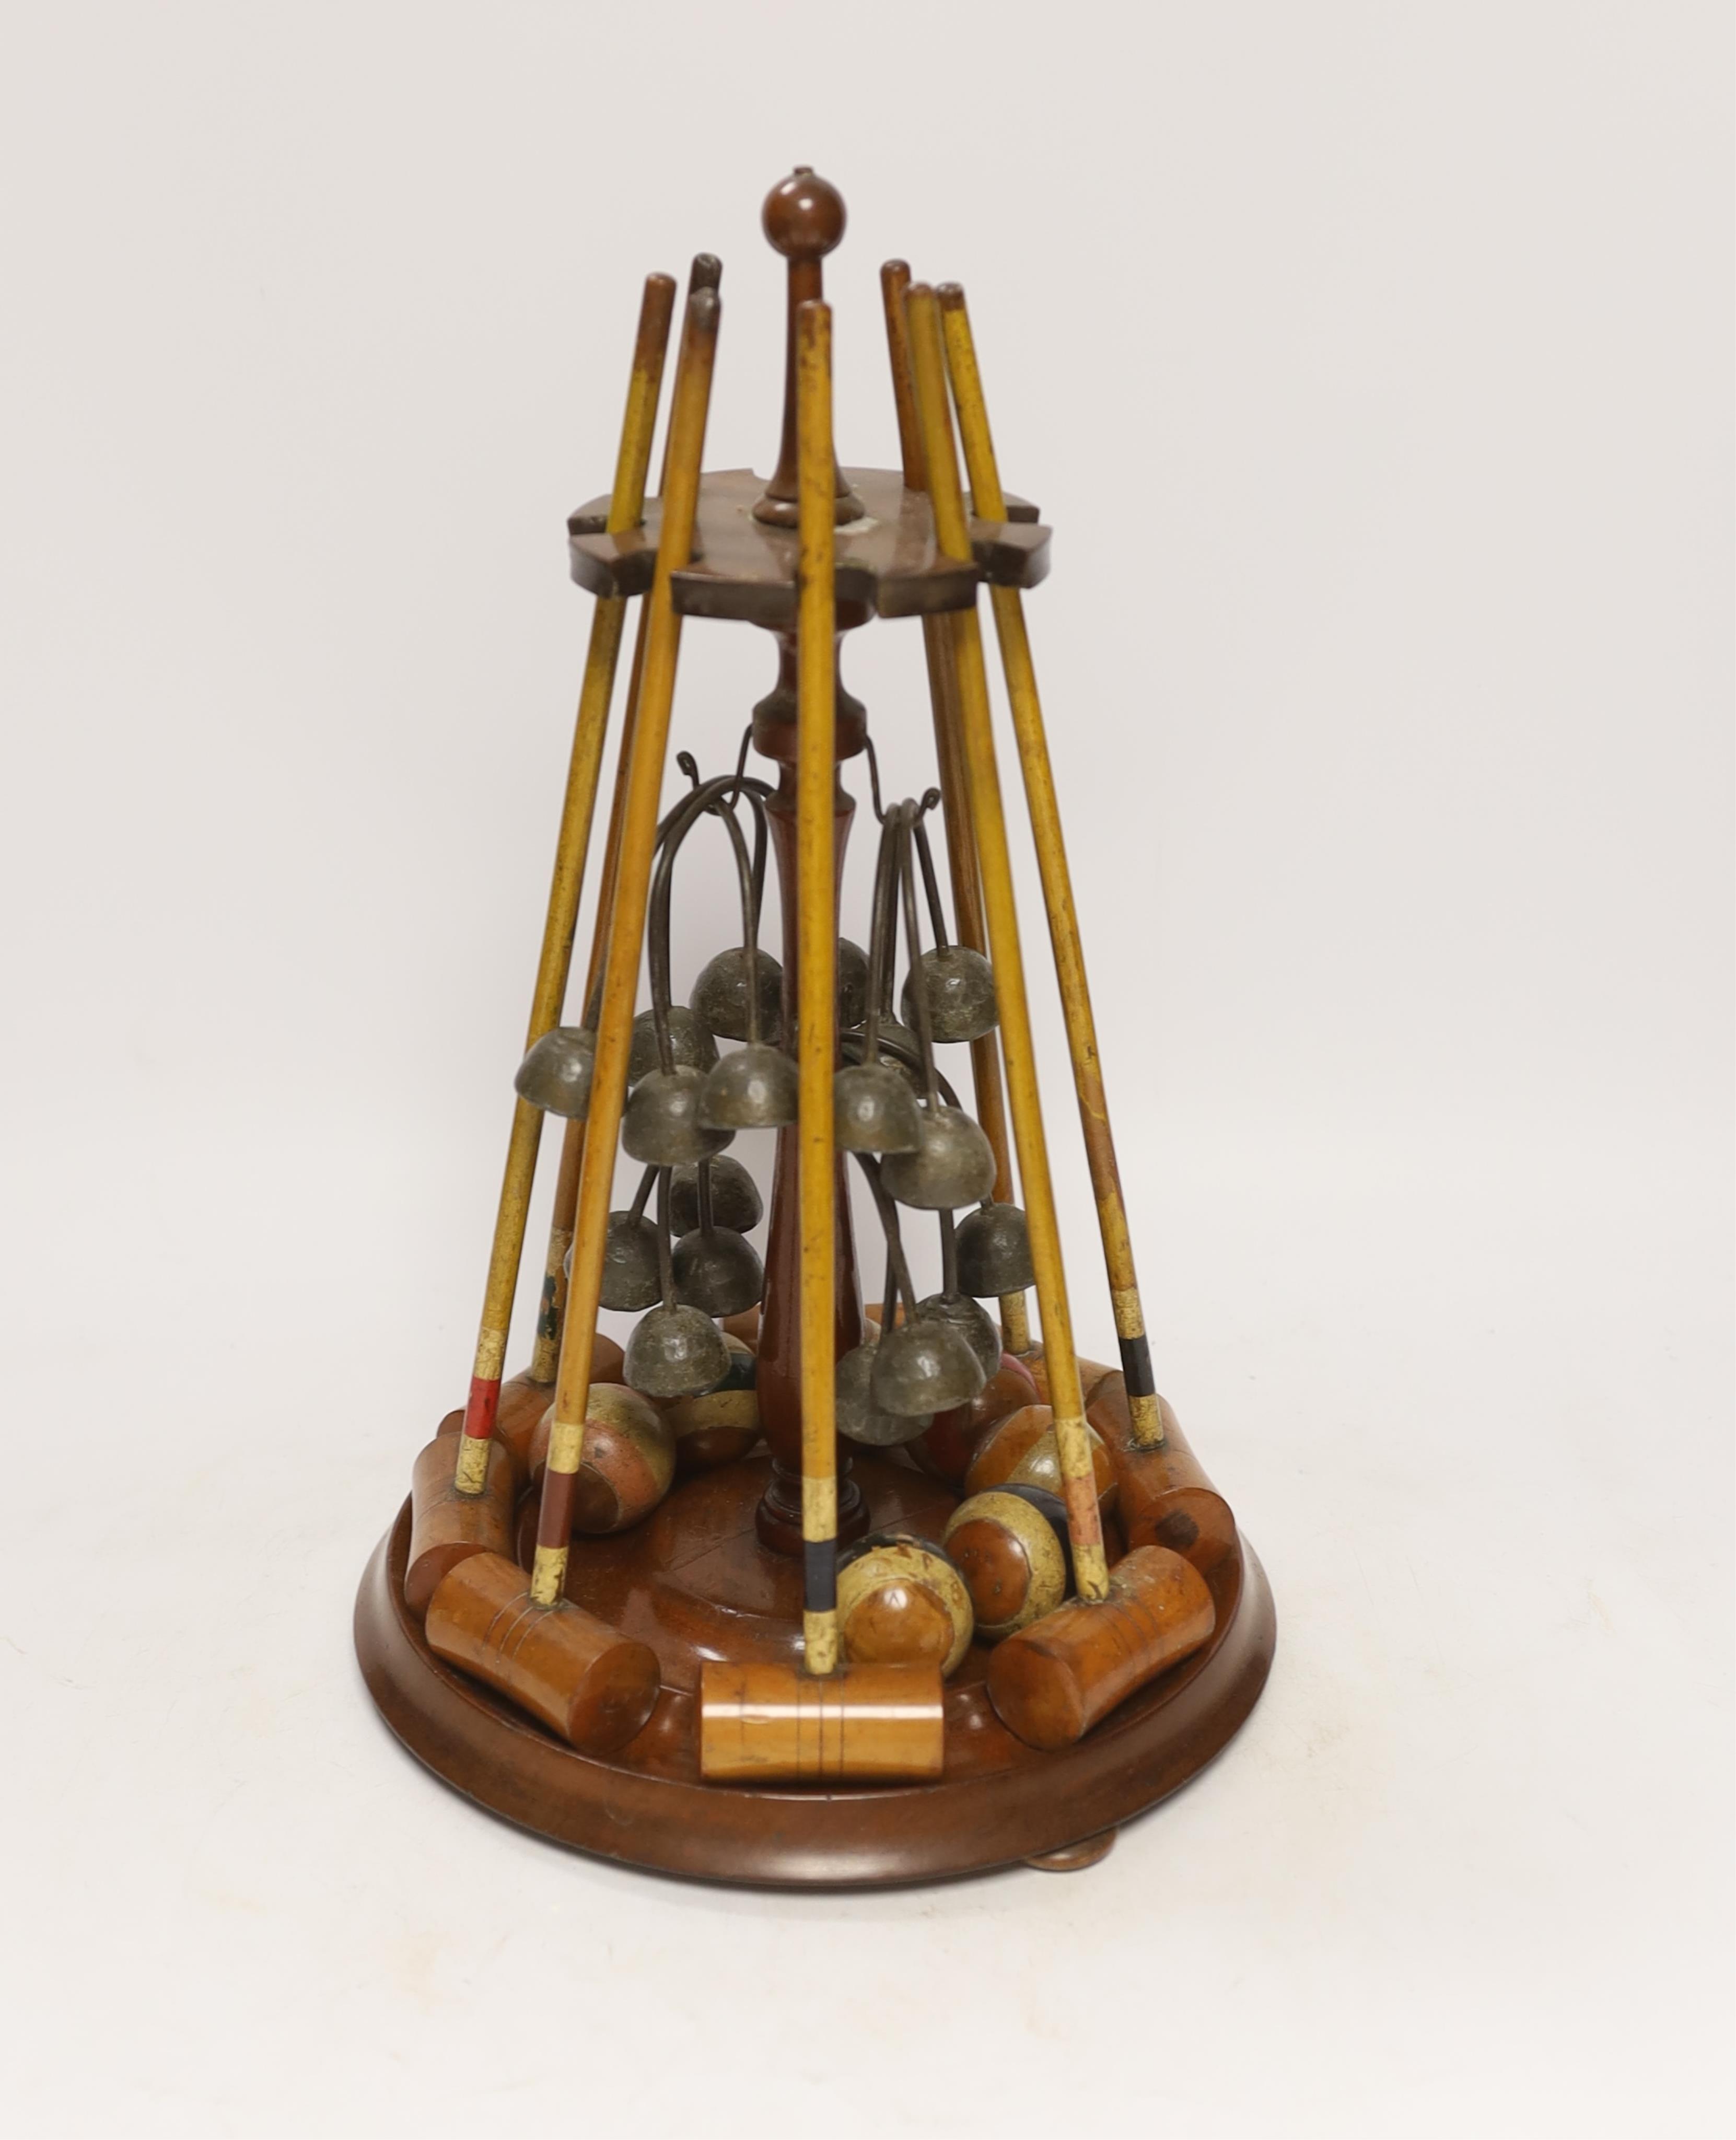 A Victorian Parlour croquet set, 33cm